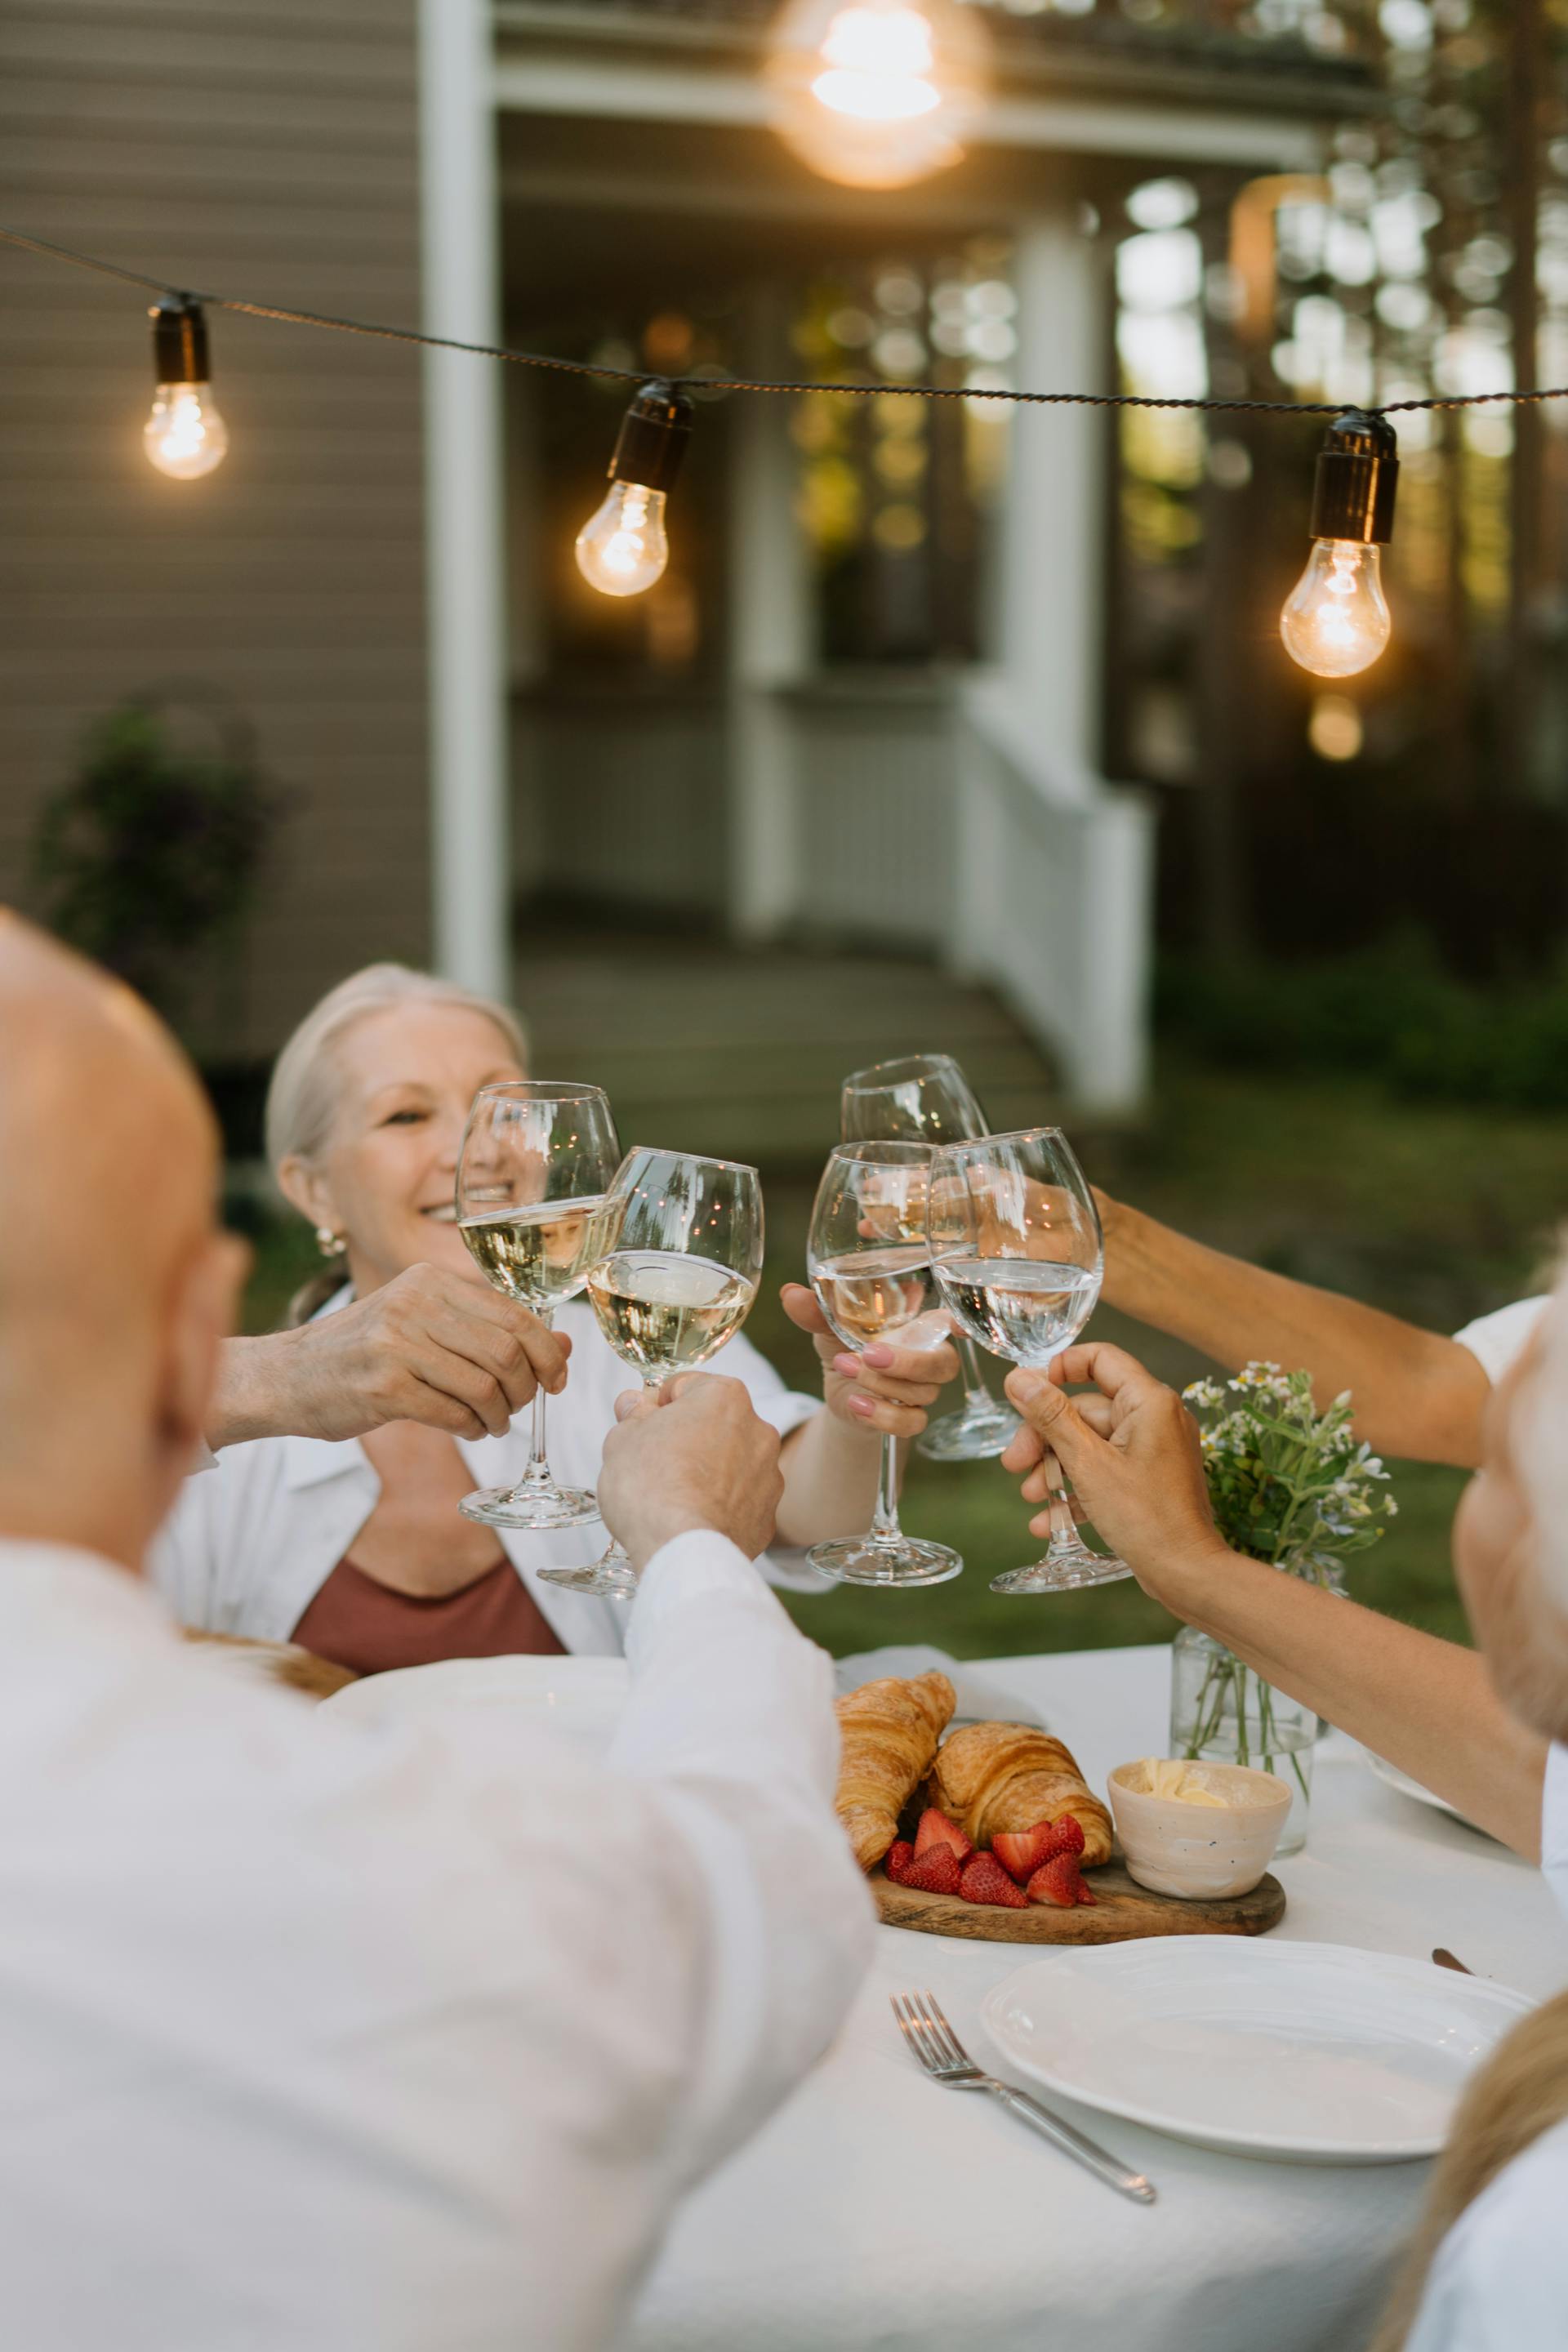 Miembros de la familia levantando sus copas durante la cena | Fuente: Pexels